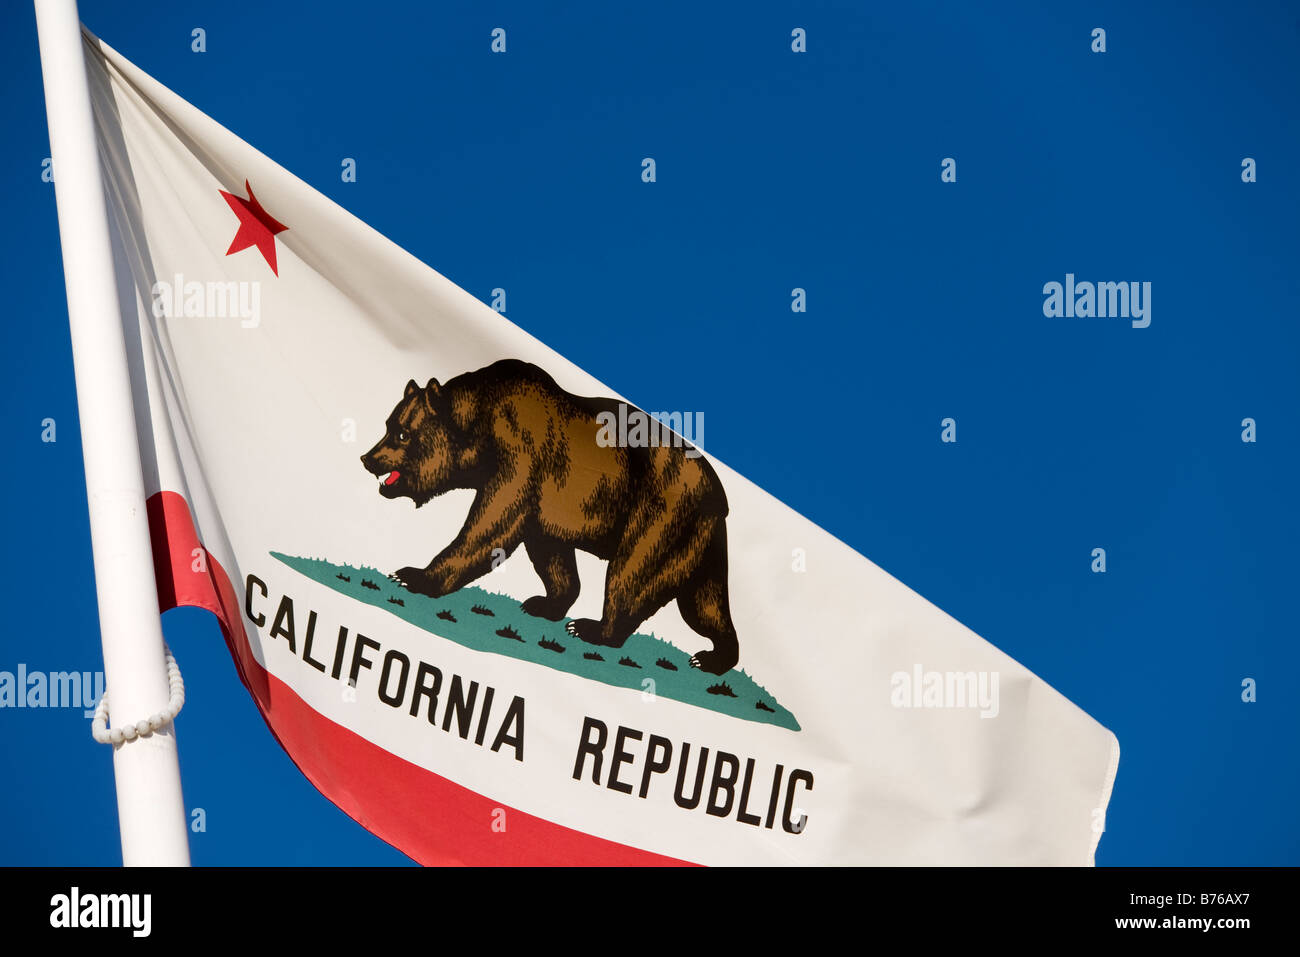 Kalifornische Flagge oder Golden State Flag, mit dem Wort "California Republic" unter dem Stern und Bär Stockfoto